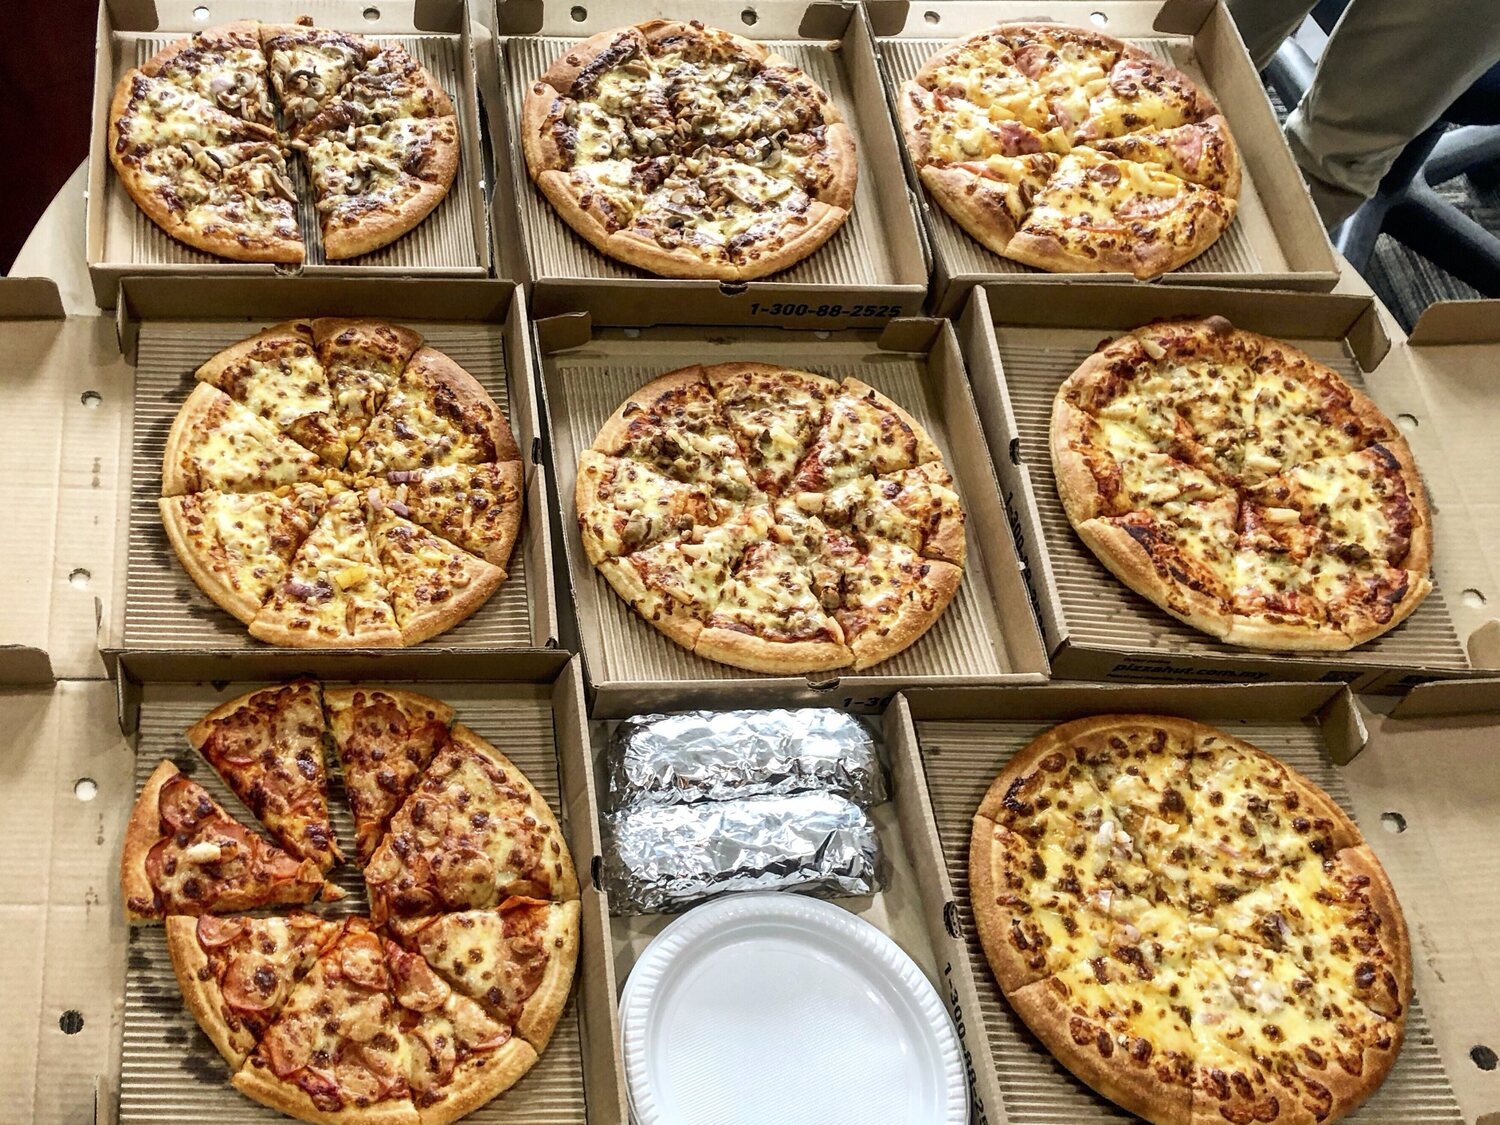 La mejor cadena de pizzas a domicilio, según la OCU